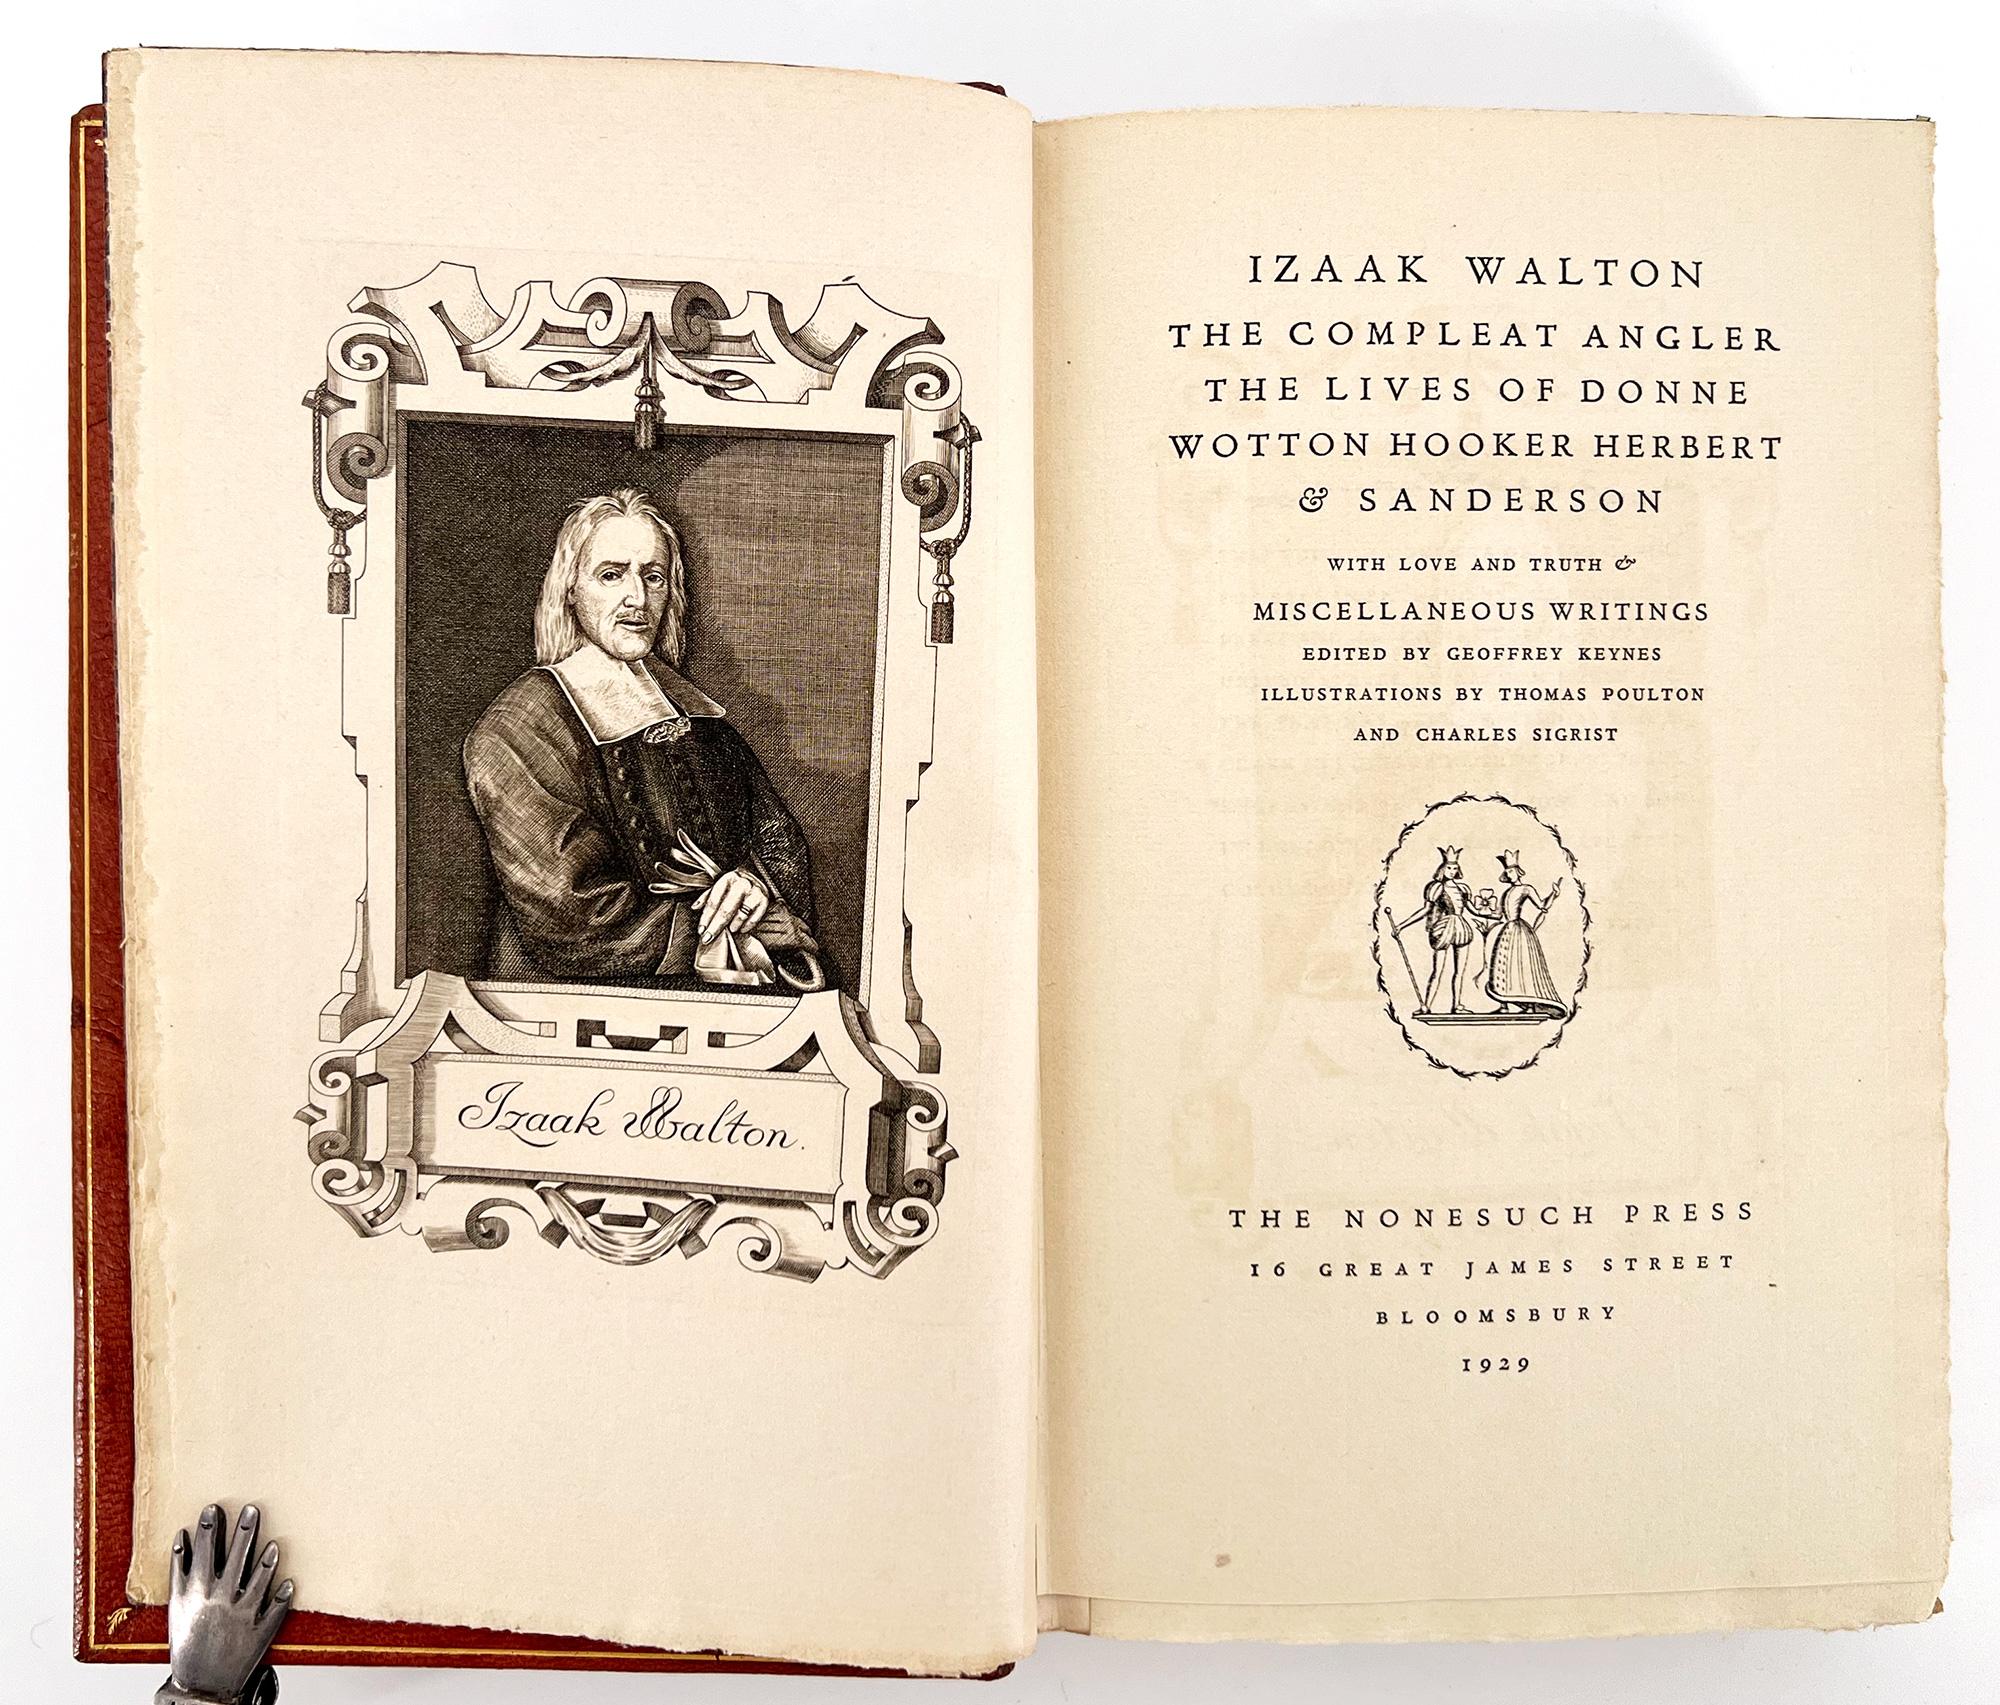 Première édition des écrits complets d'Izzak Walton (1593 - 1683), ce volume contient l'œuvre la plus célèbre de Walton, le Compleat Angler de l'édition de 1668 - avec les variantes de 1676 en annexe [Satchell p. 5] - dans laquelle Walton célèbre